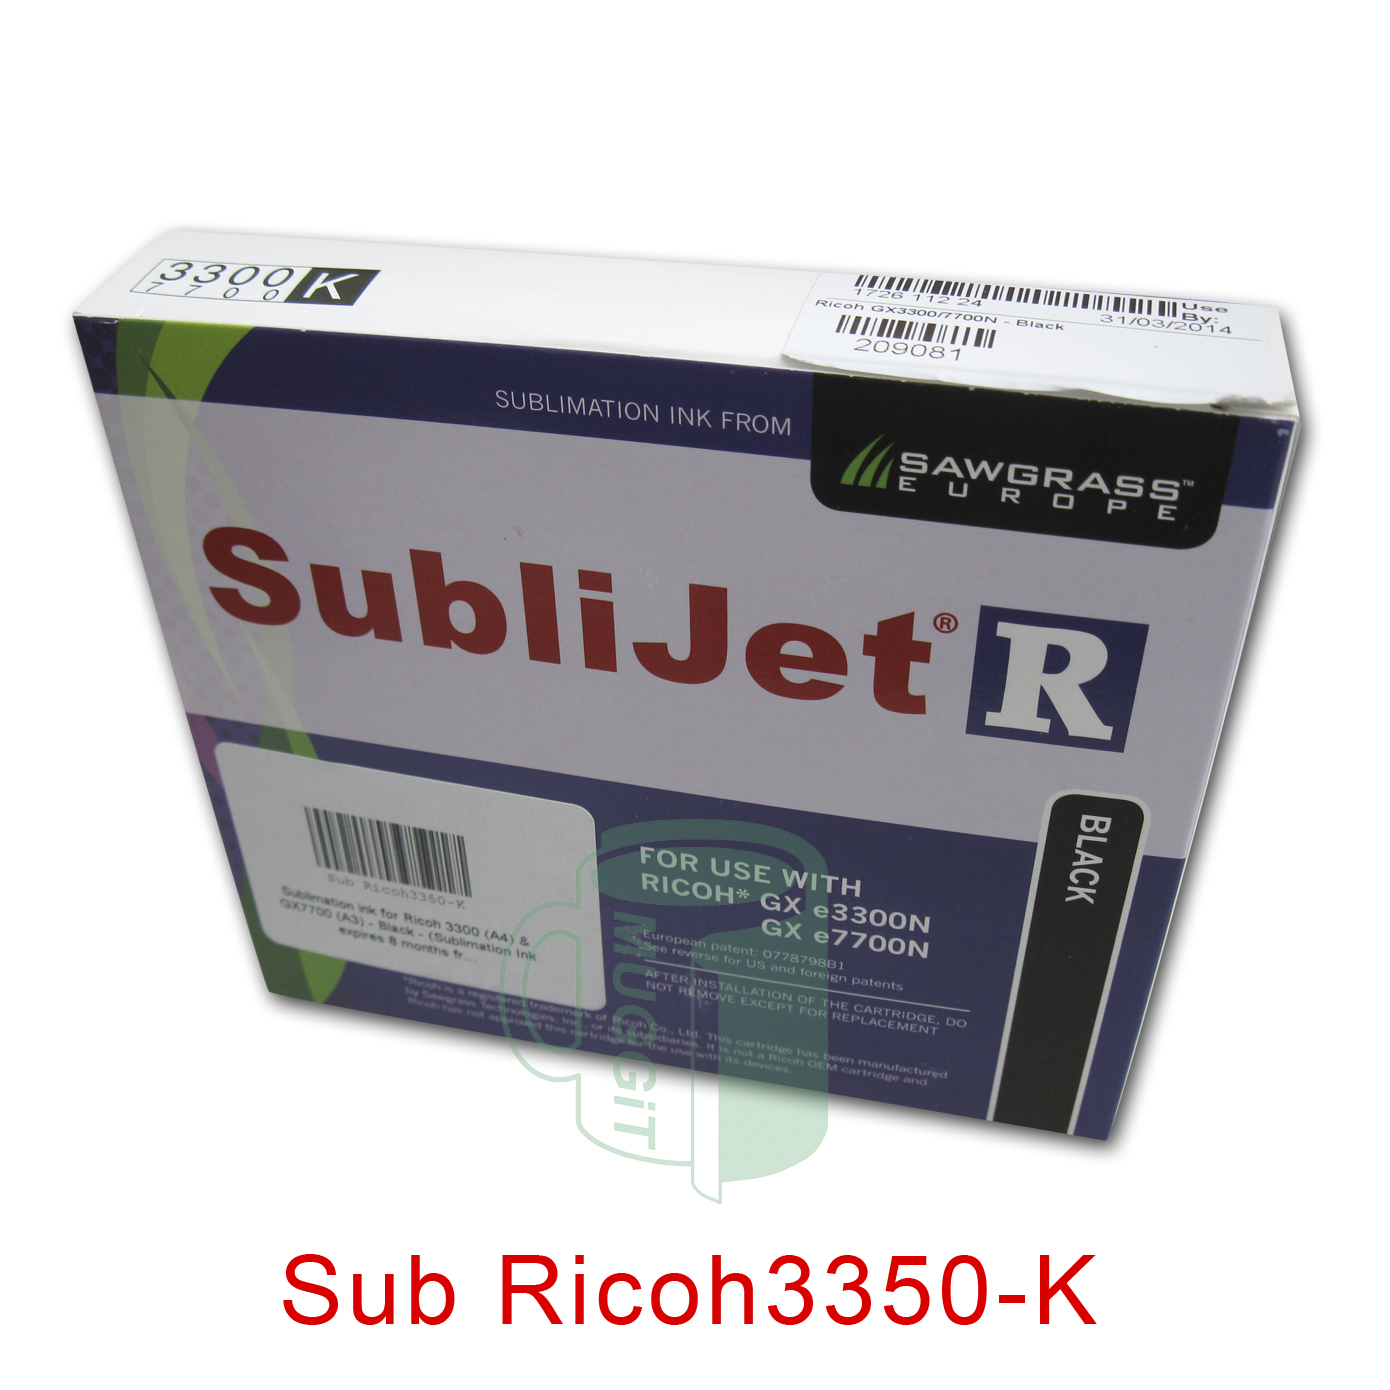 Sub Ricoh3350-K